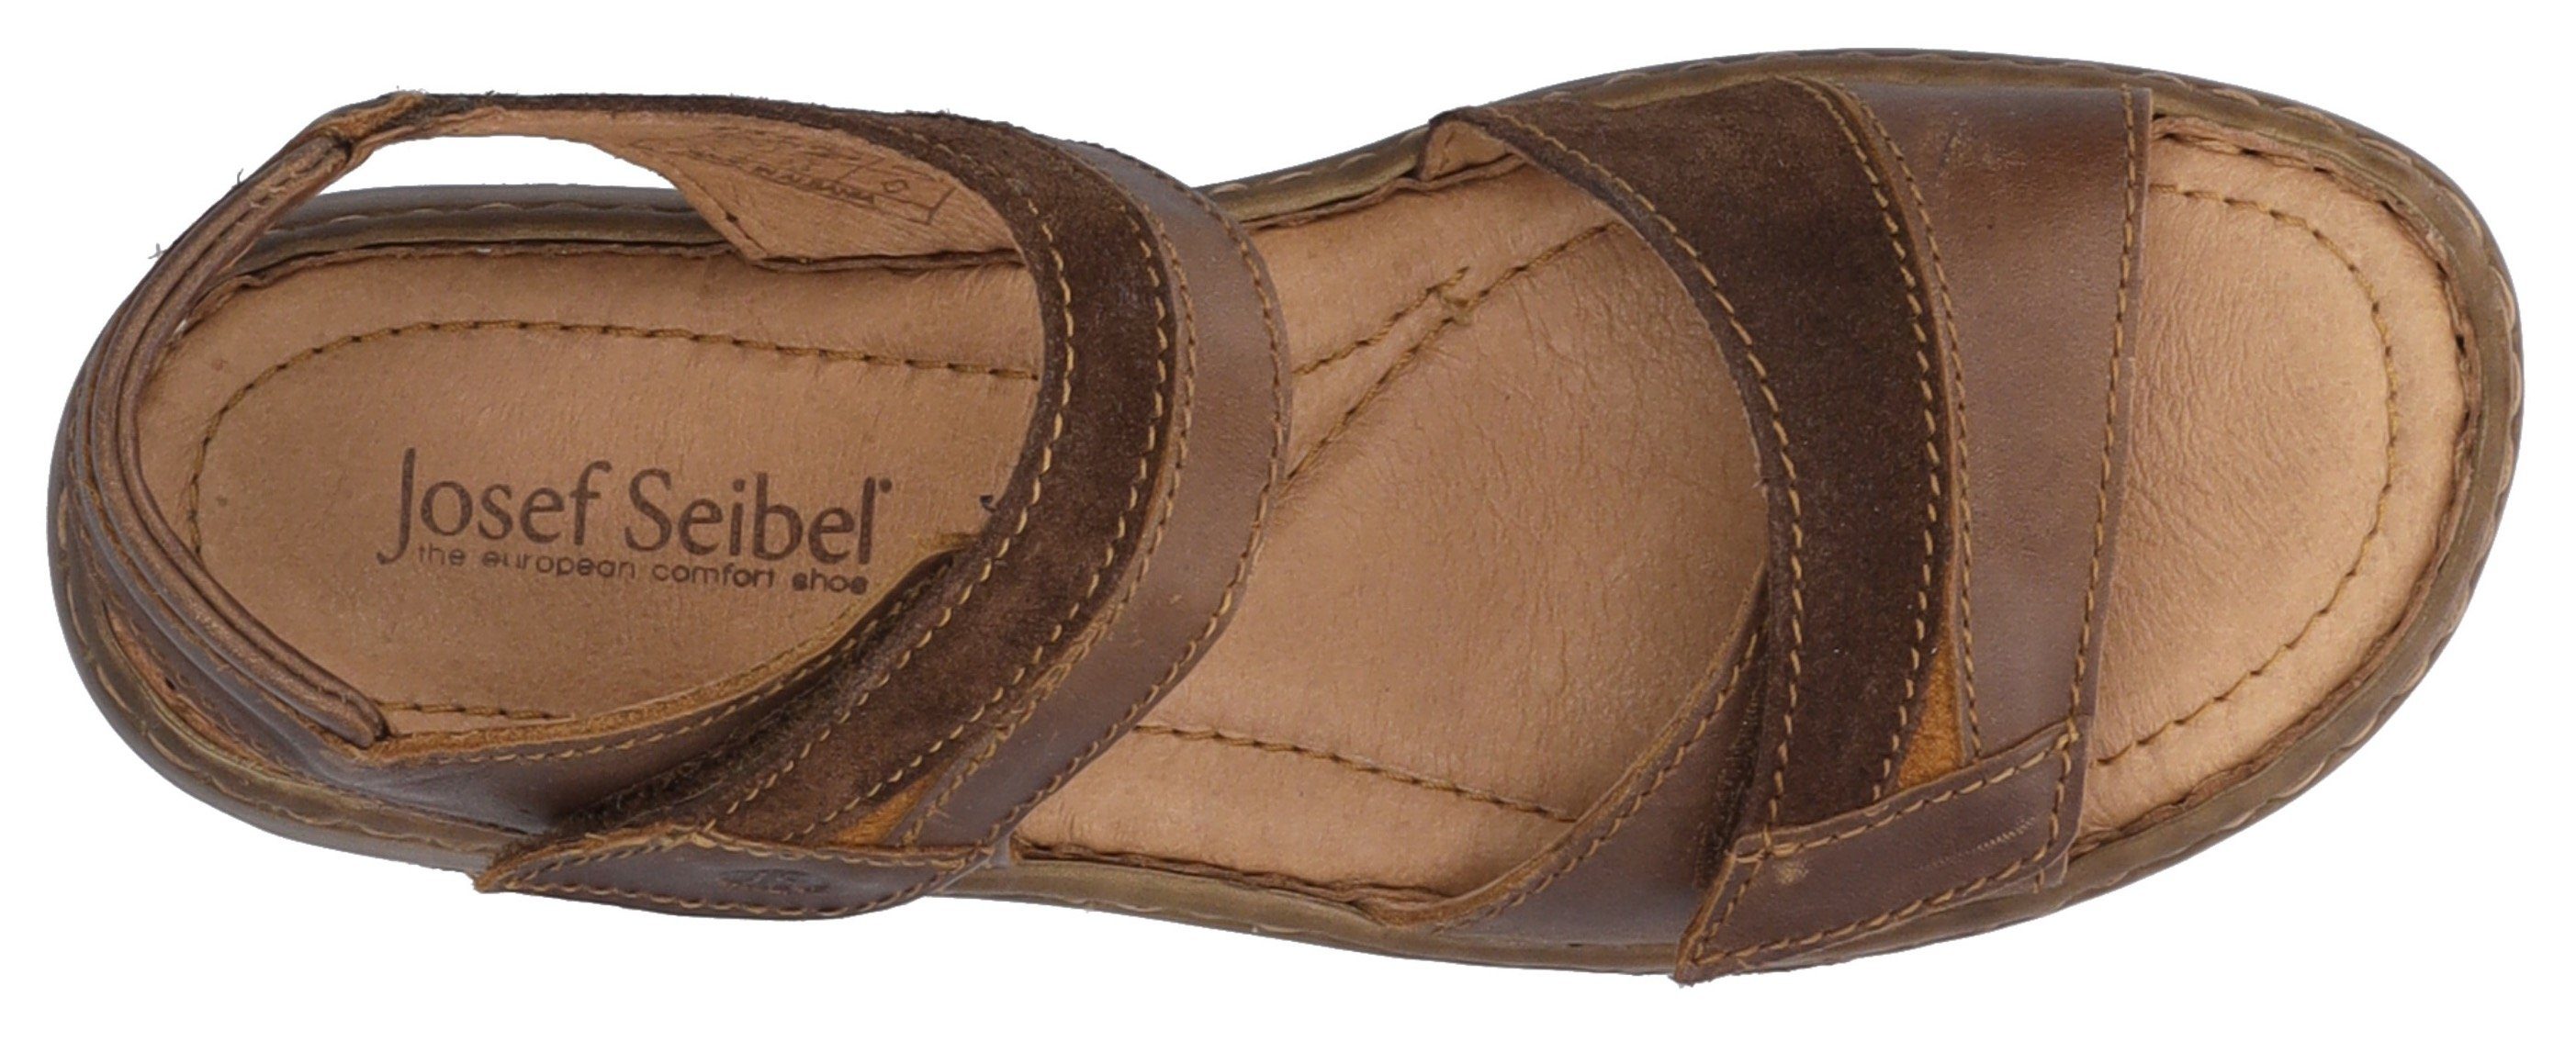 Josef Seibel Debra 19 mit Klettverschluss praktischem braun Sandale